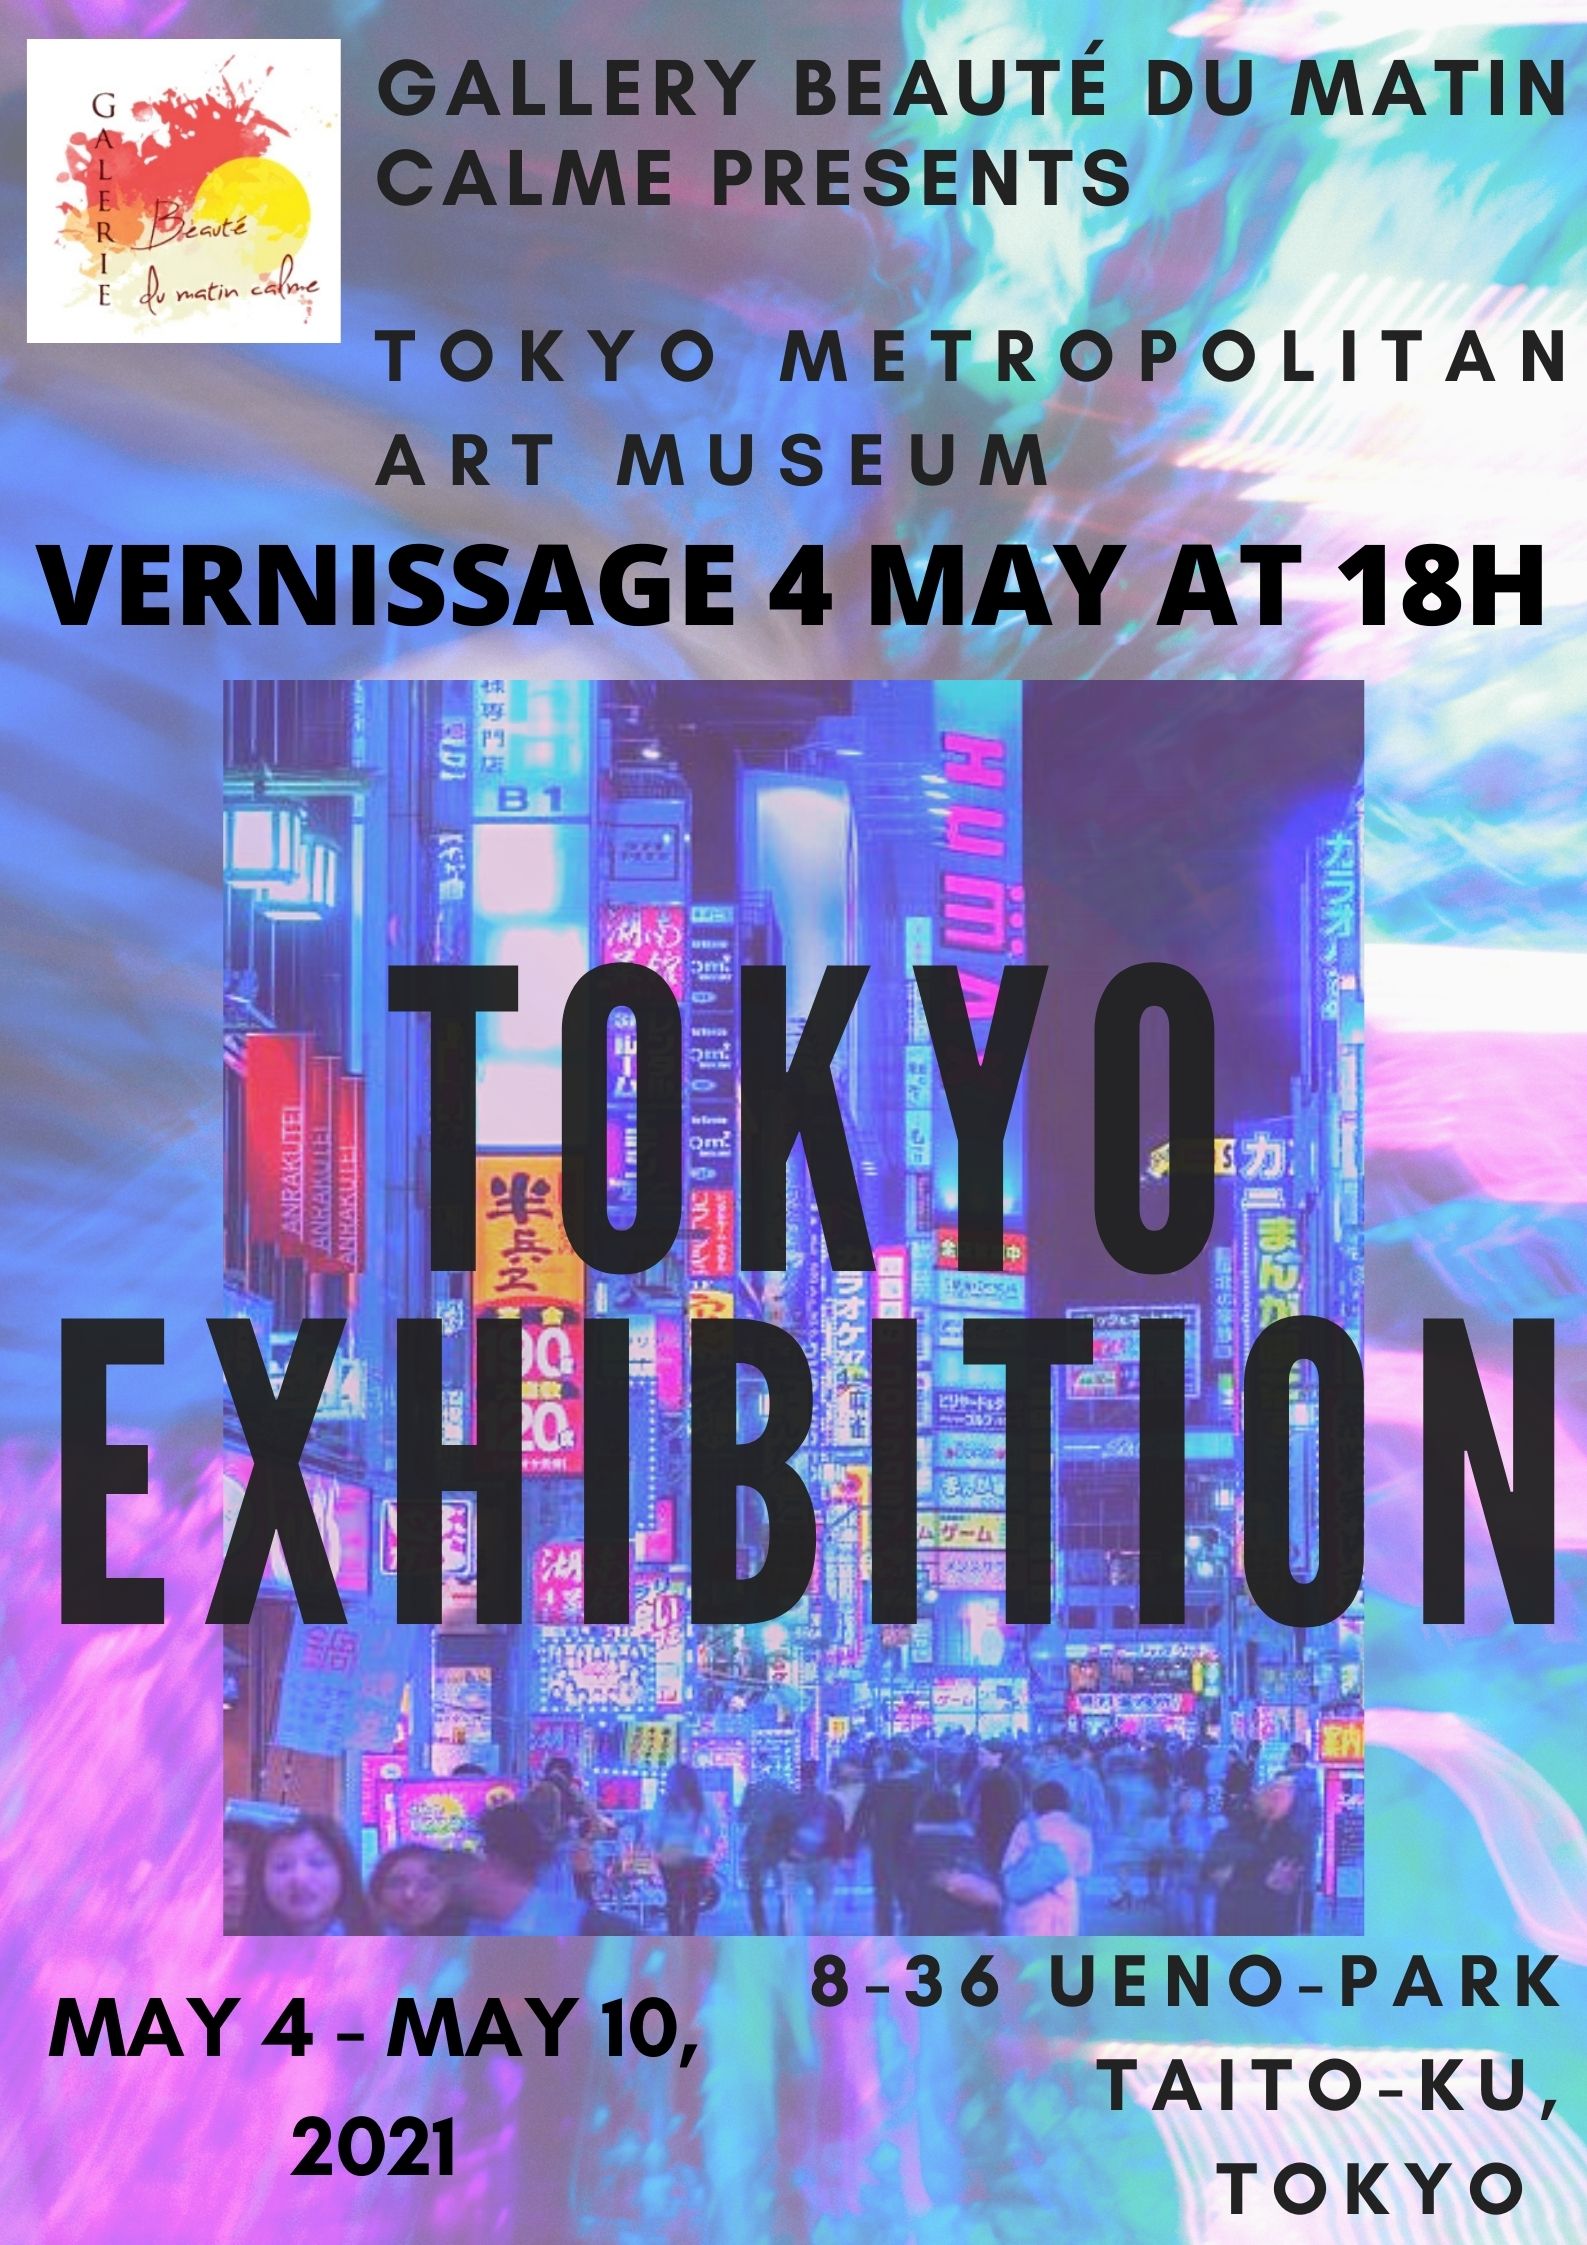 Alessandra Viotti, Artiste Peintre, participe à l'exposition de Tokyo du 4 Mai au 10 Mai au musée Metropolitain Art Museum.